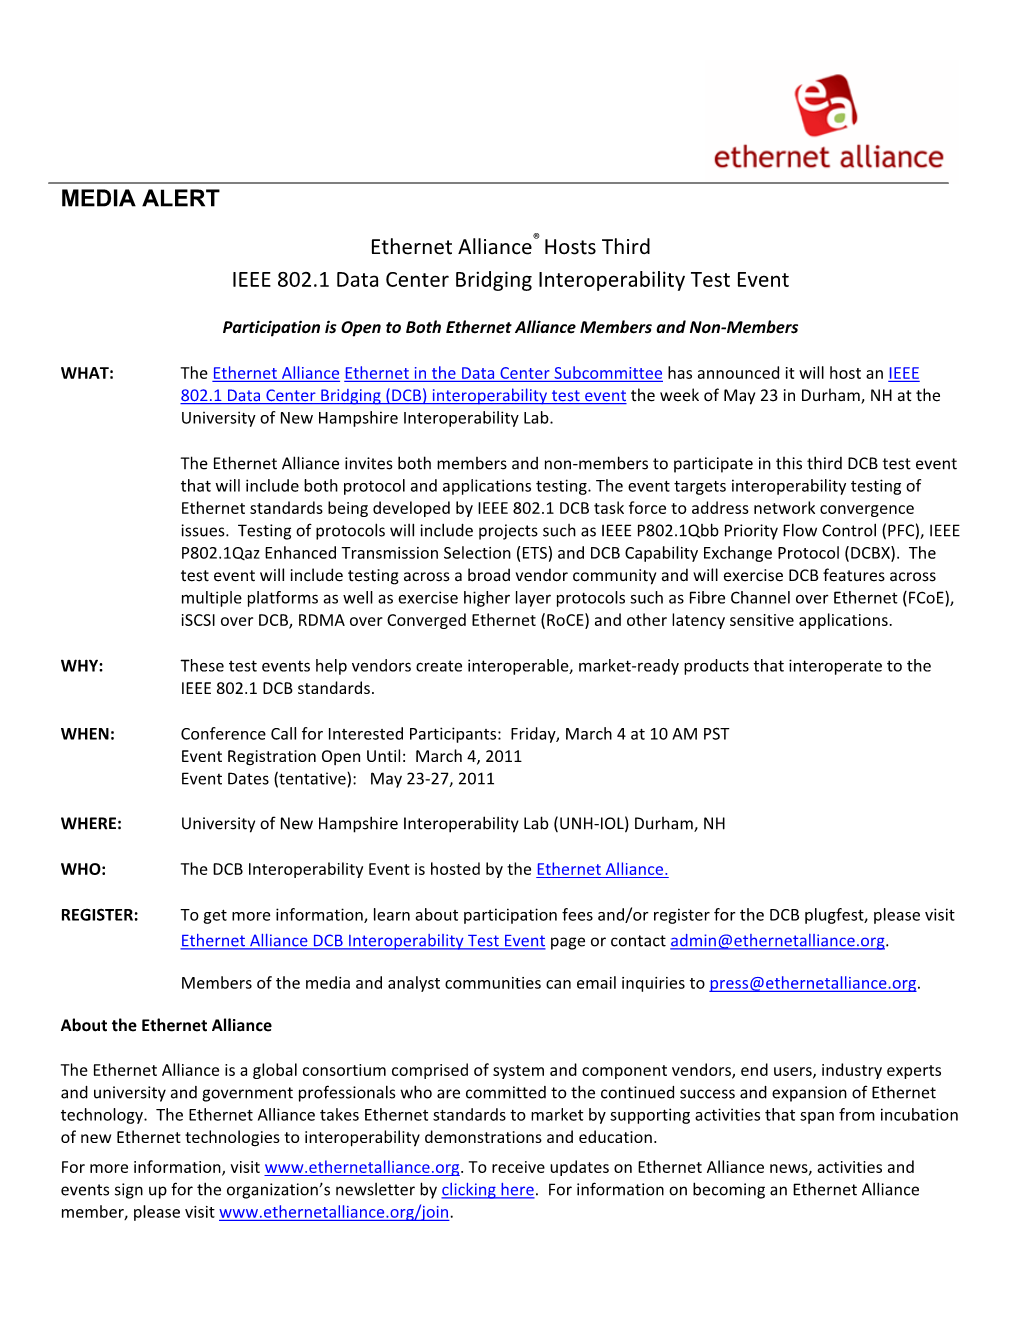 Ethernet Alliance Hosts Third IEEE 802.1 Data Center Bridging